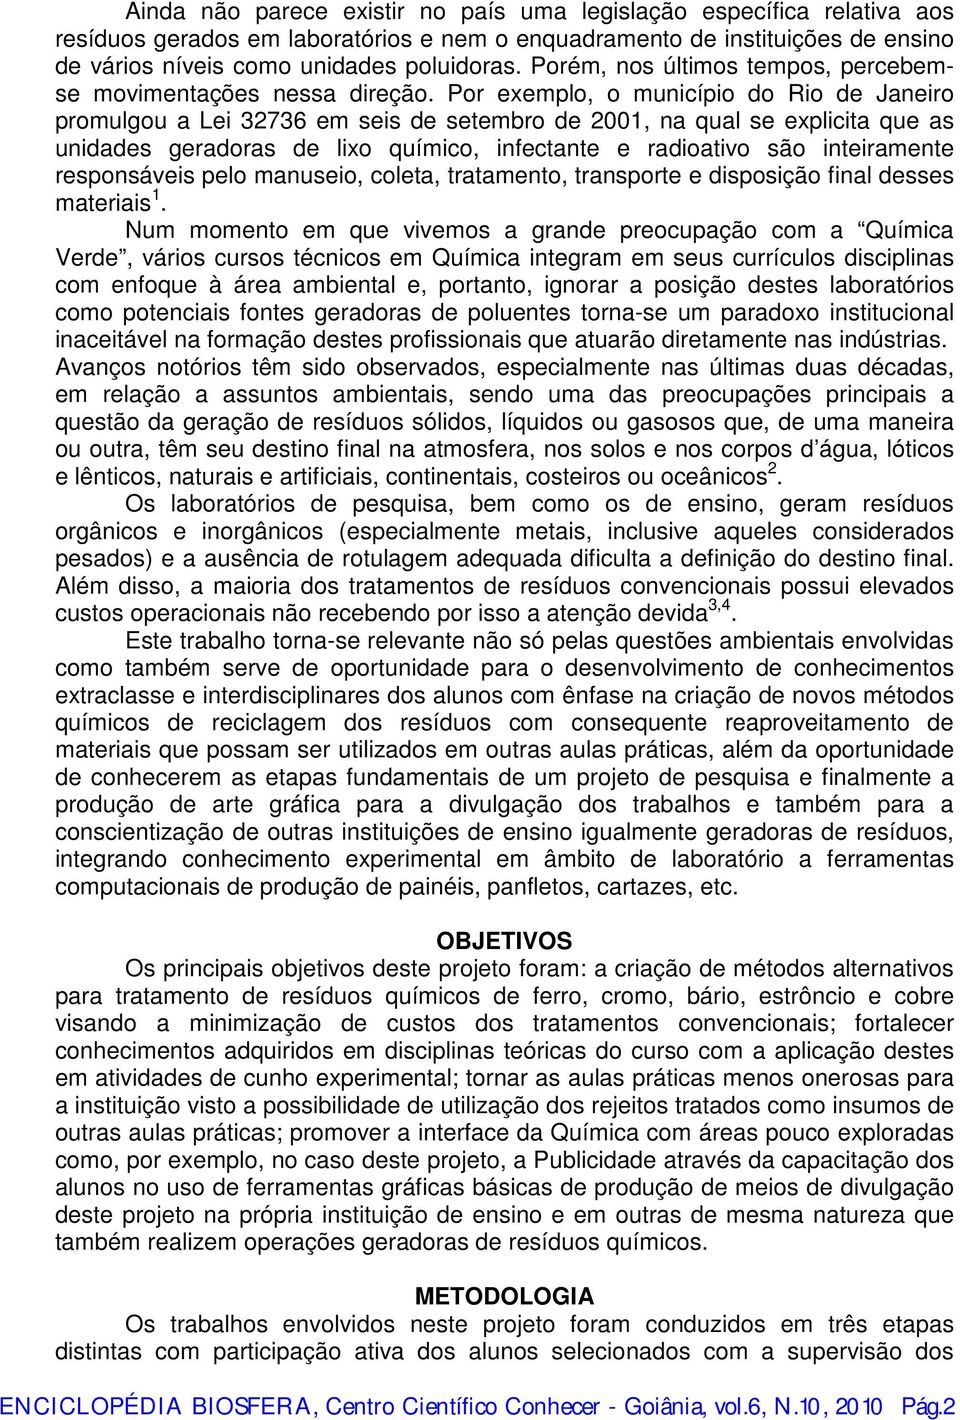 Por exemplo, o município do Rio de Janeiro promulgou a Lei 32736 em seis de setembro de 2001, na qual se explicita que as unidades geradoras de lixo químico, infectante e radioativo são inteiramente